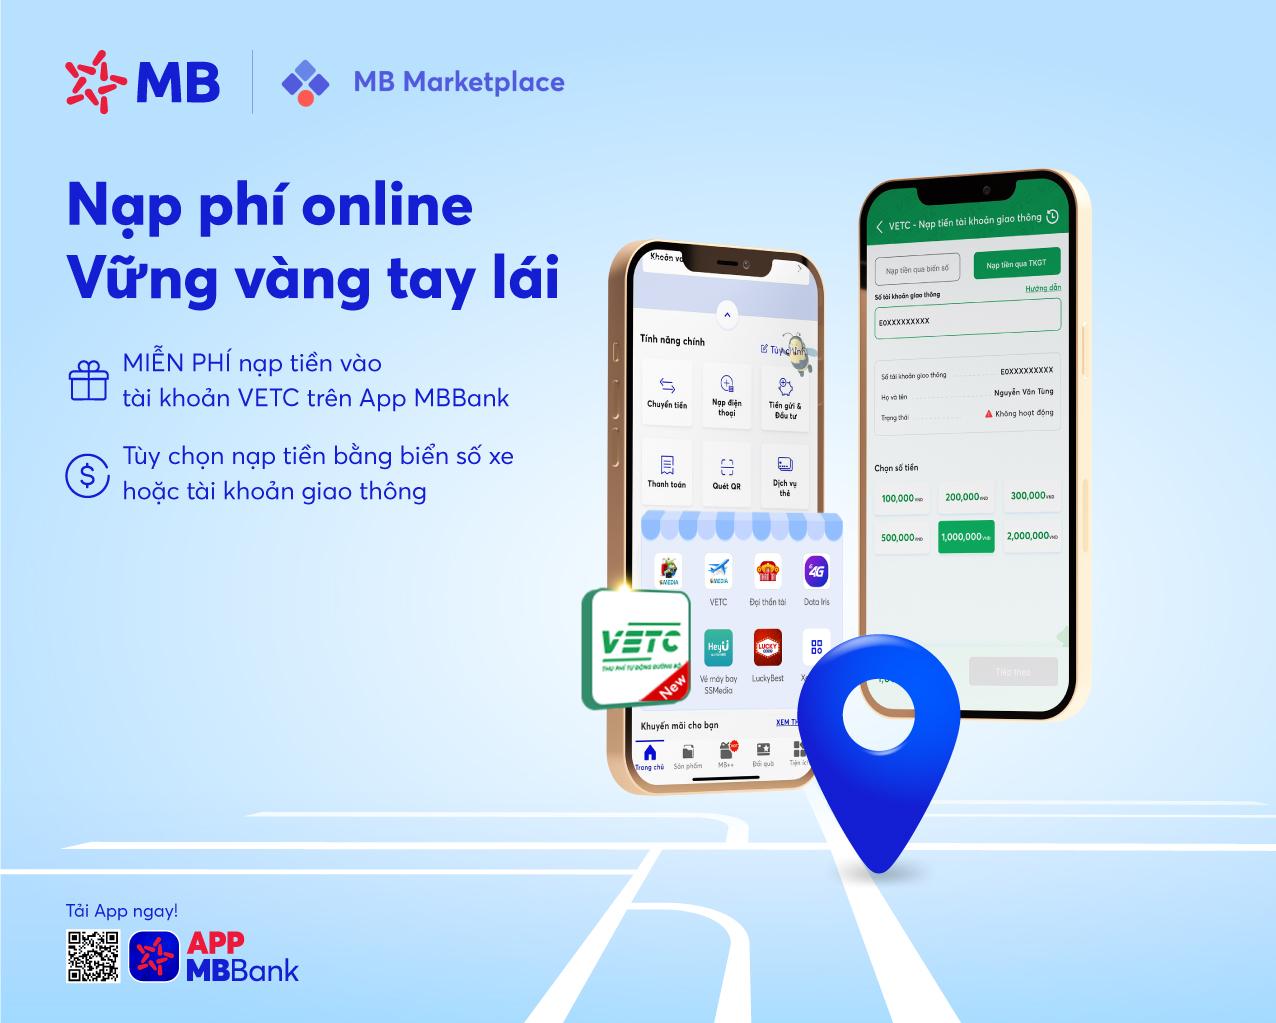 App MBBank tích hợp tính năng nạp tiền vào tài khoản giao thông siêu tiện lợi cho các tài xế - Ảnh 1.